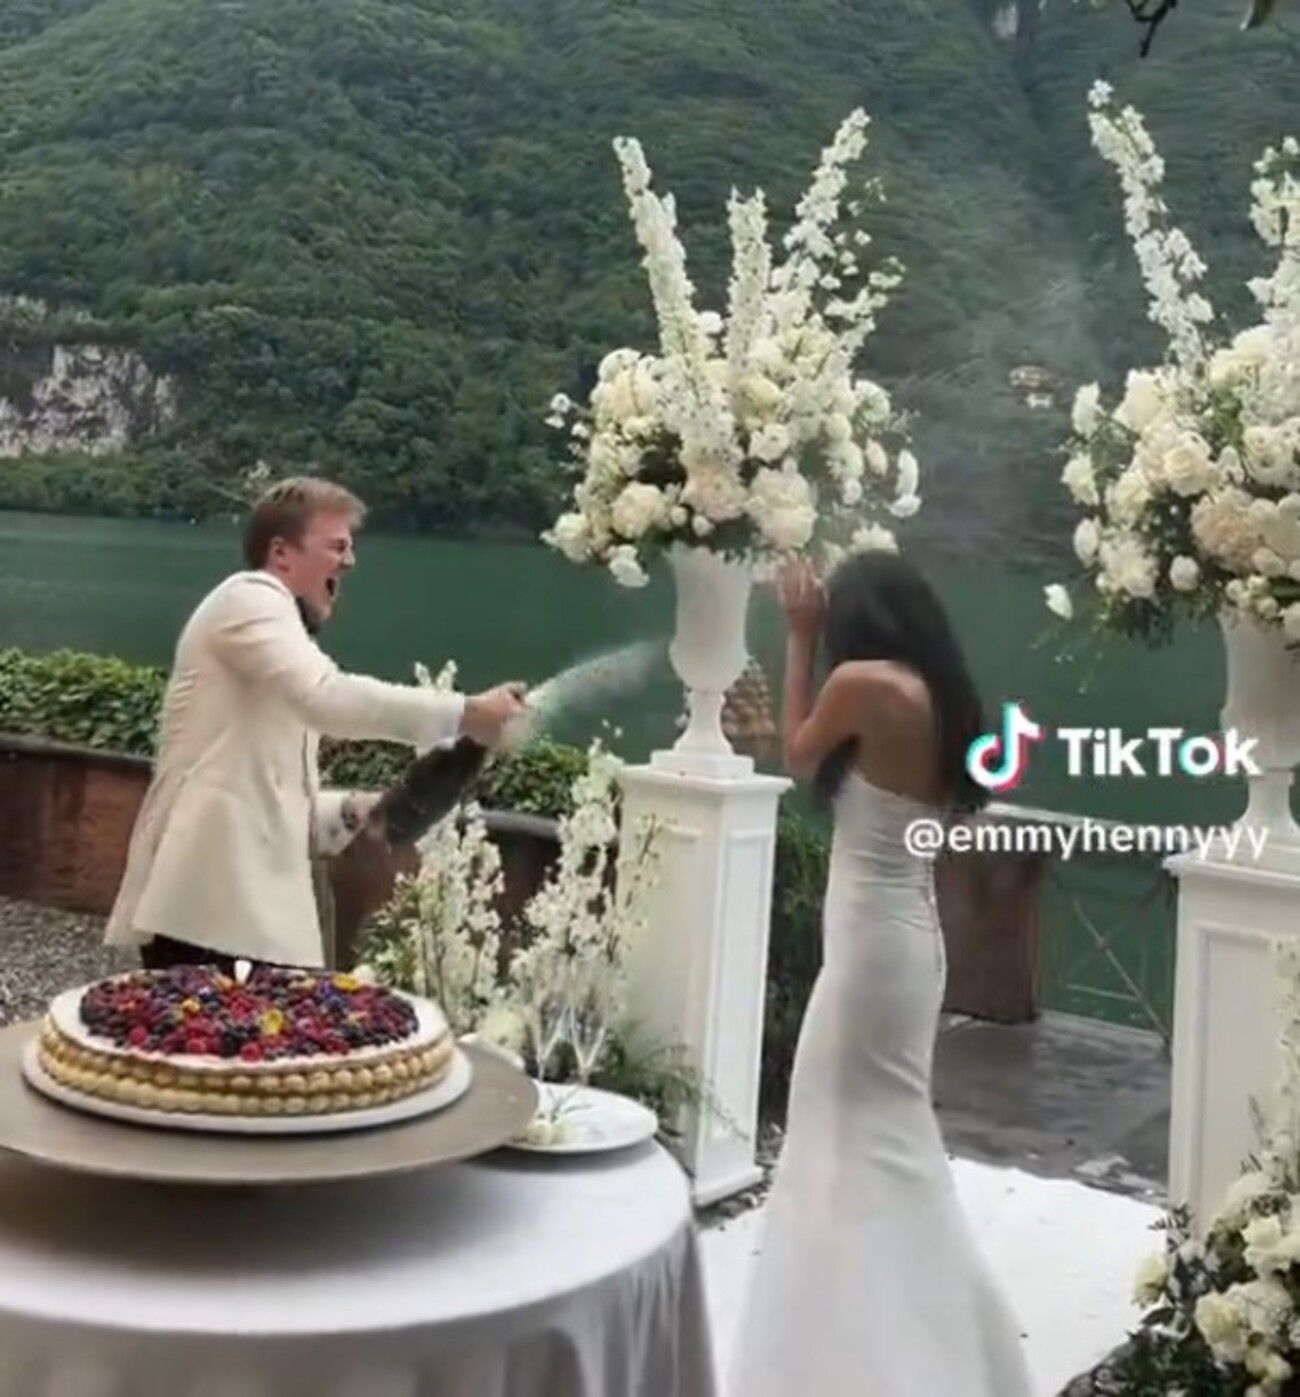 Коул Хеннеси облил невесту игристым во время свадьбы - кадры и детали скандала